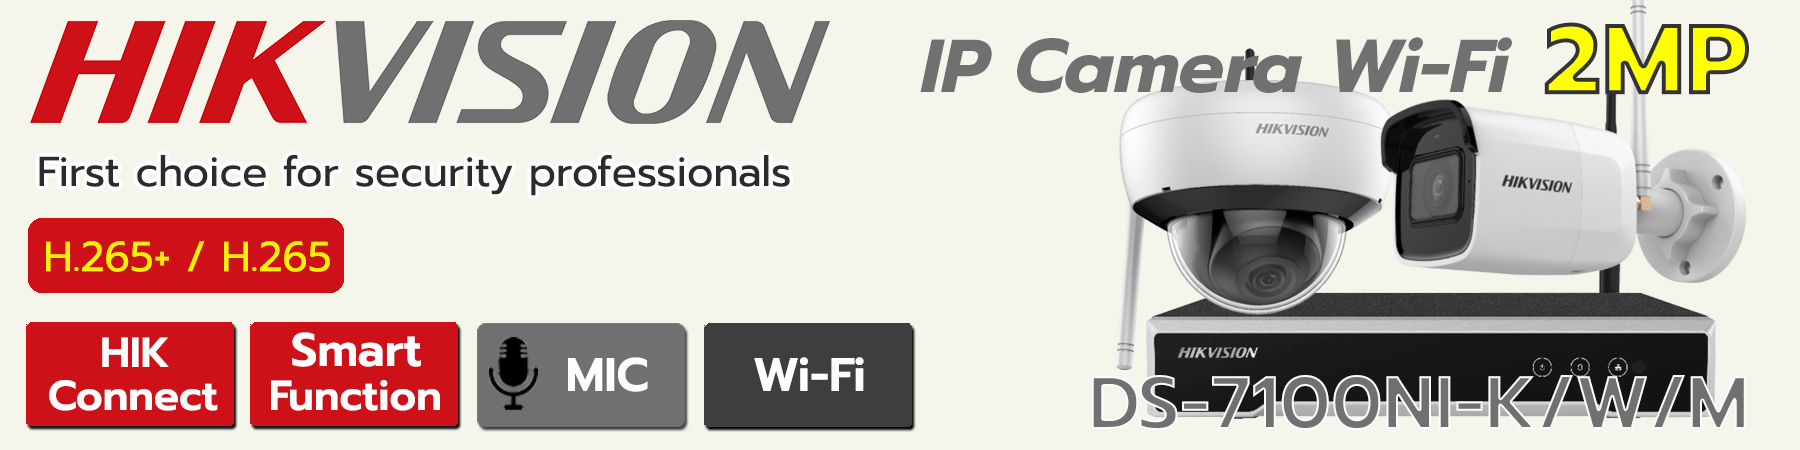 ชุดกล้อง Hikvision Wi-Fi 2MP 8ตัว,ชุดกล้อง Hikvision IPC Wi-Fi 2MP 8ตัว,ชุดกล้อง Hikvision ไร้สาย,ชุดกล้อง Hikvision วายฟาย,DS-2CV2021G2-IDW(D),DS-2CD2121G1-IDW1,DS-7108NI-K1/W/M